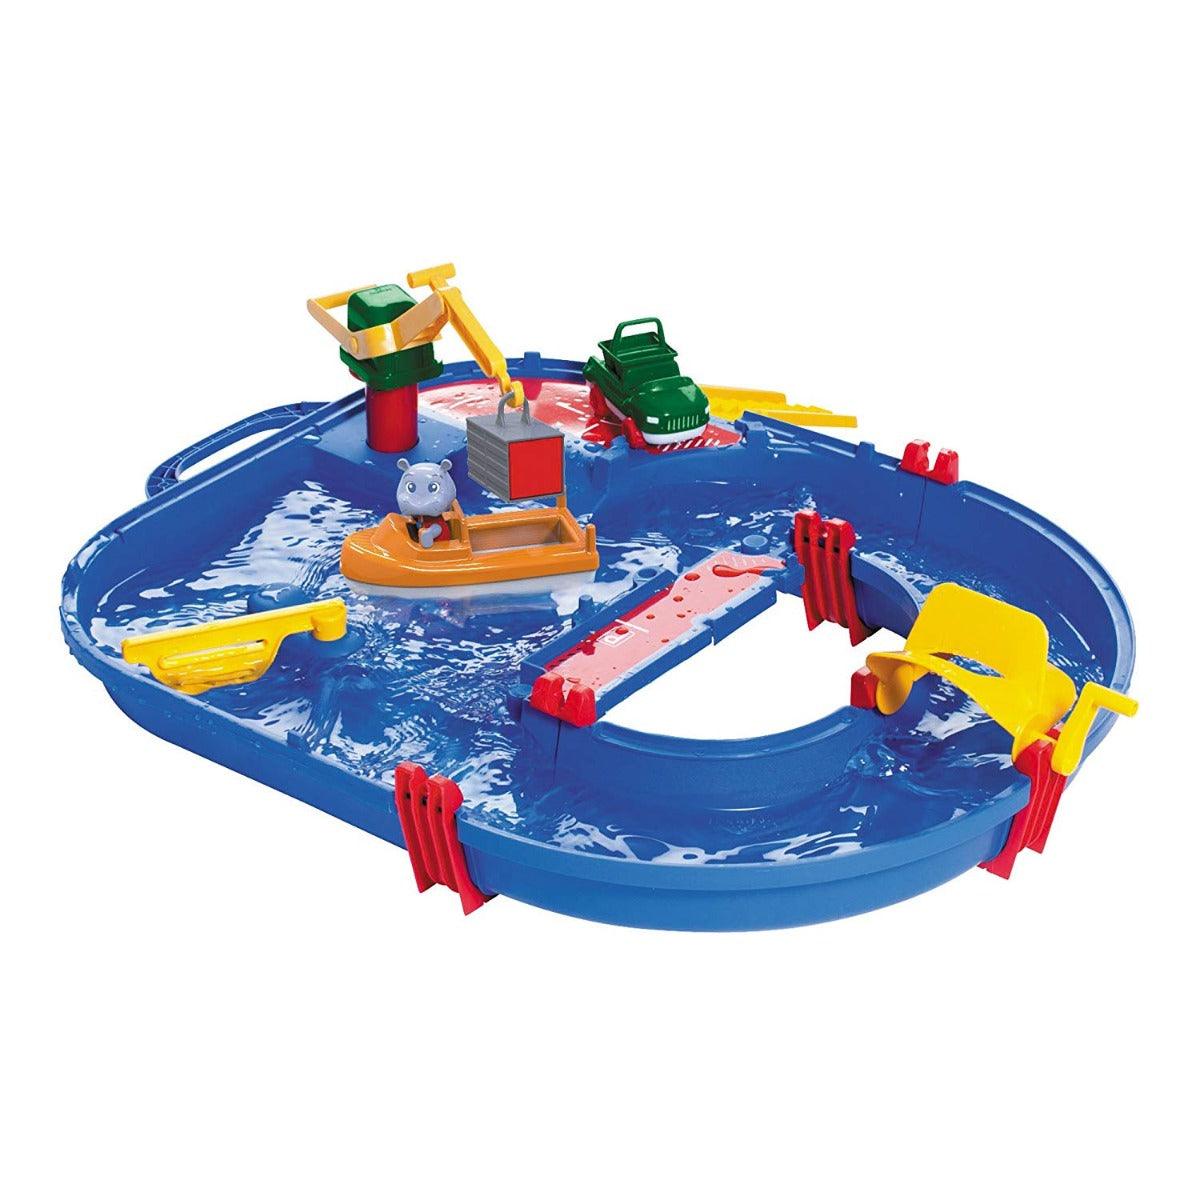 Aquaplay Water Playset